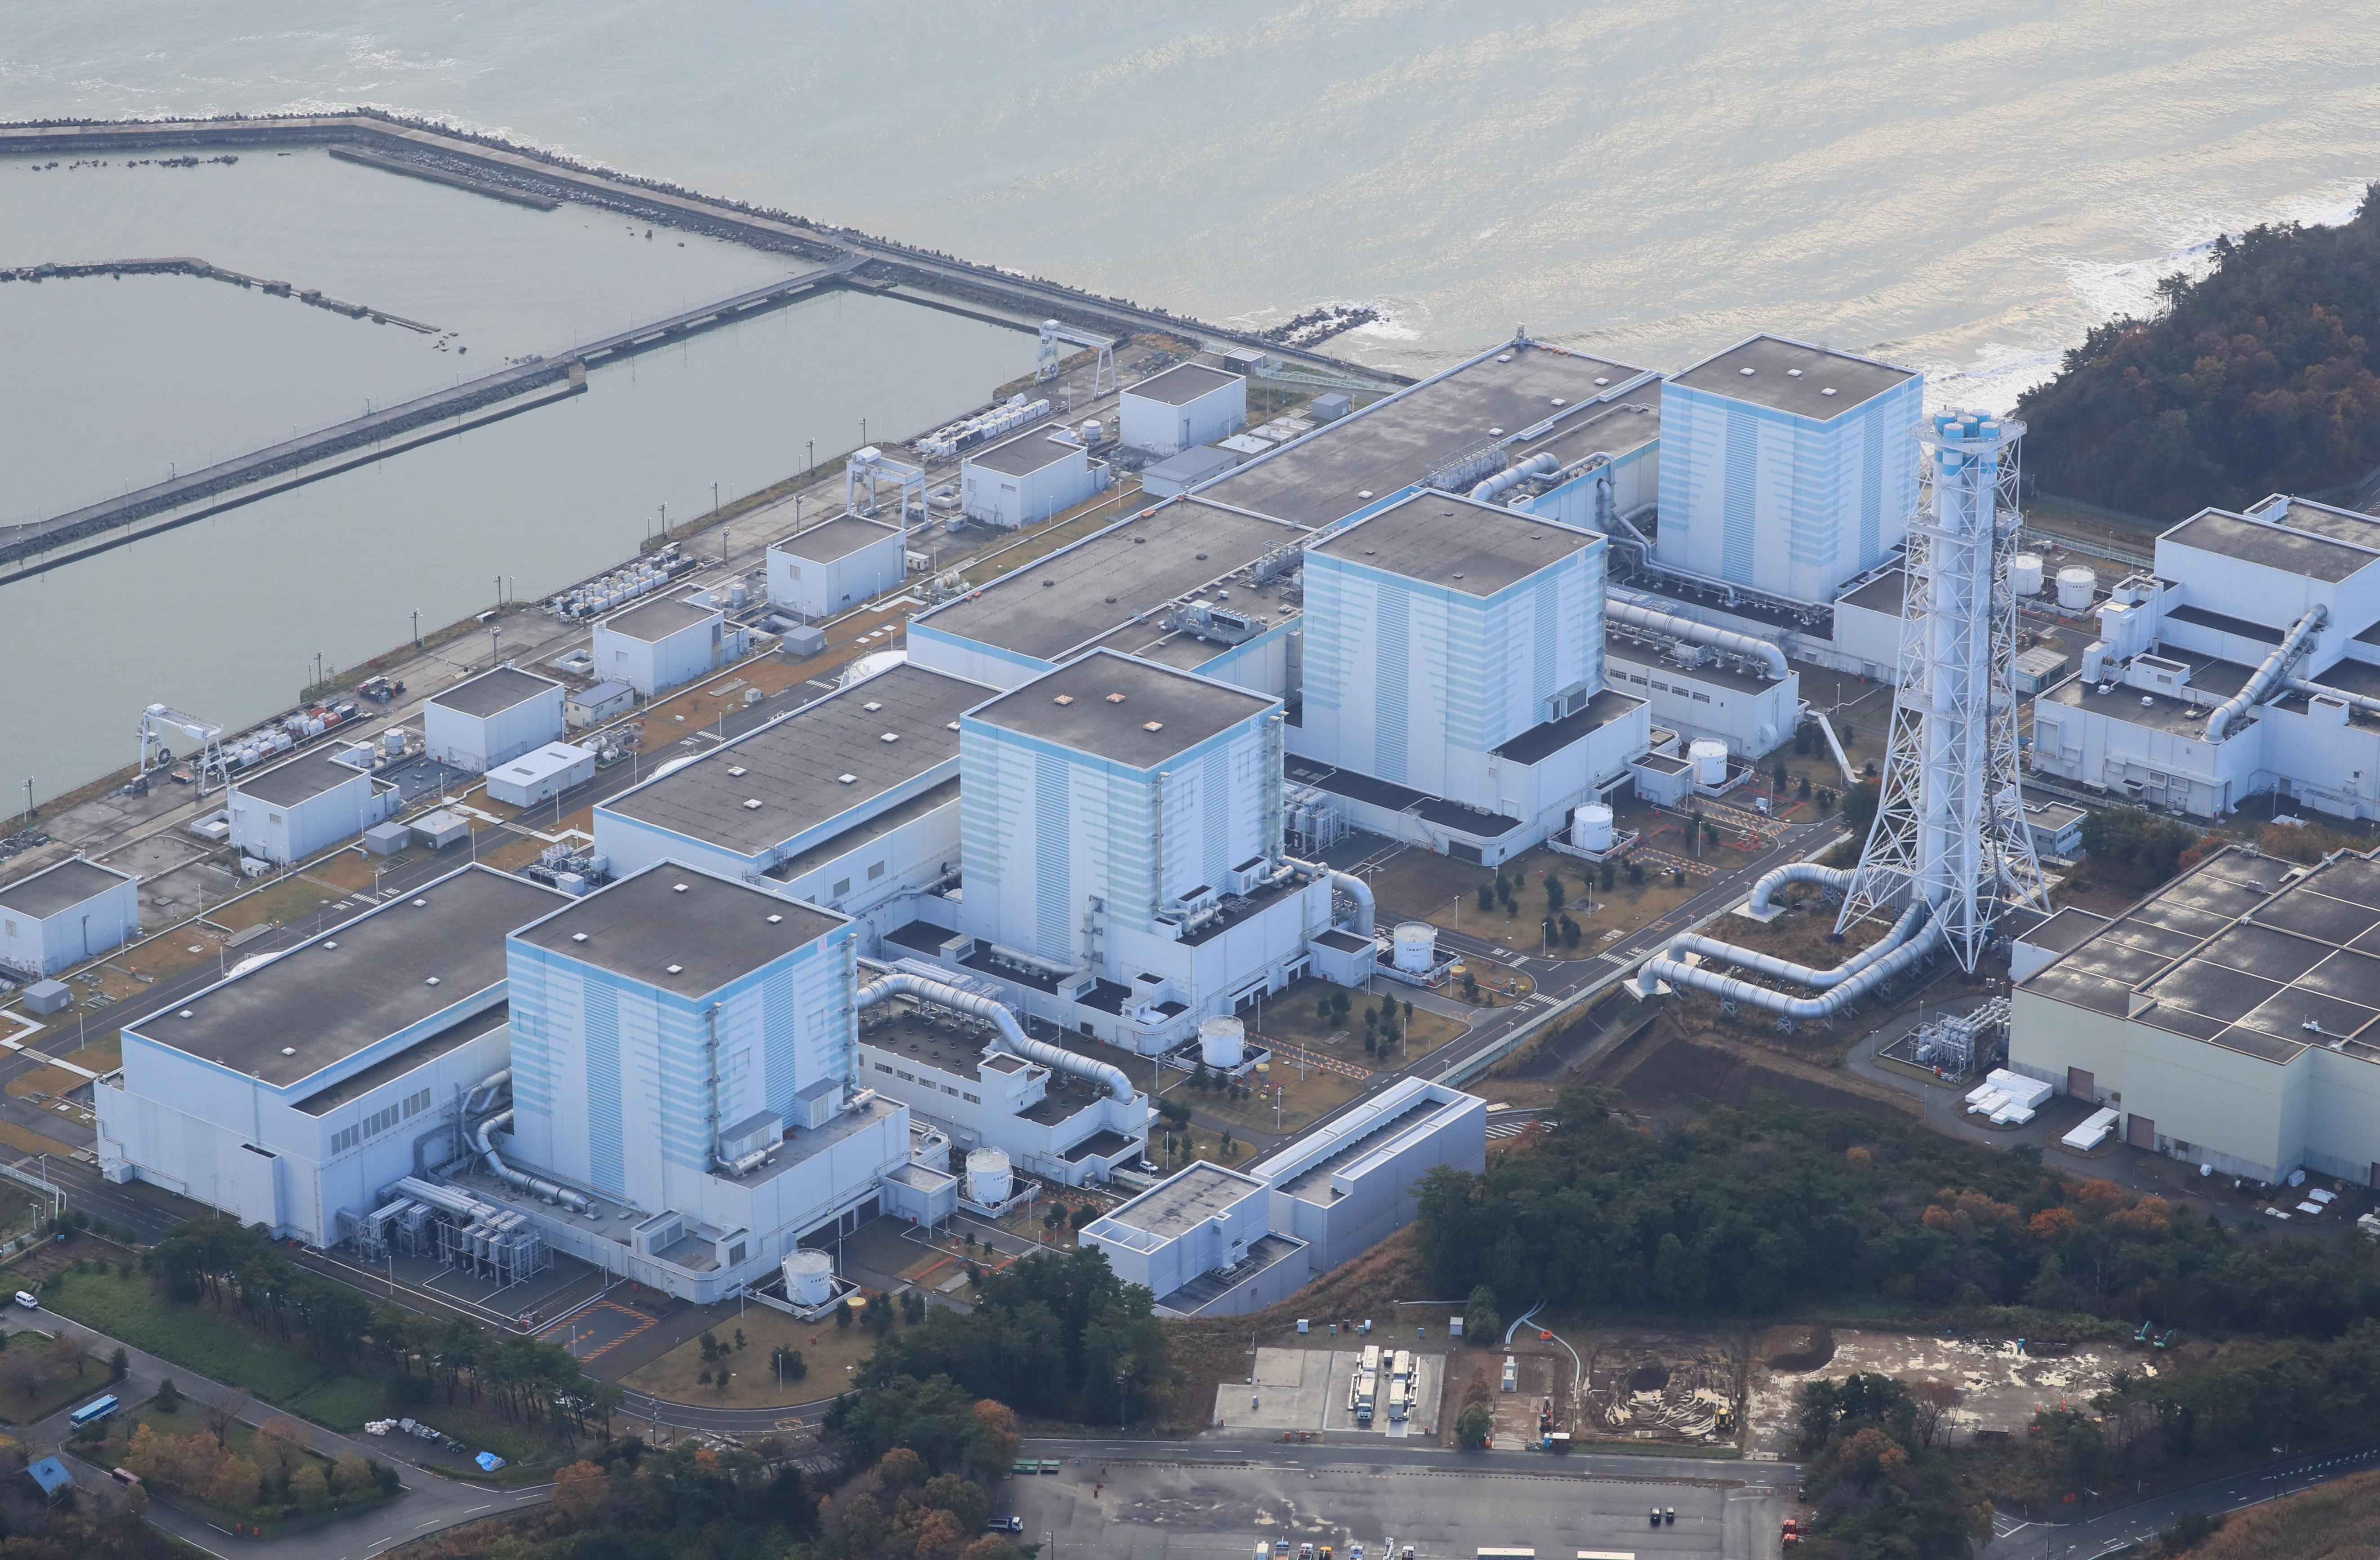 日本福岛第二核电站确定报废 预计工期超过40年